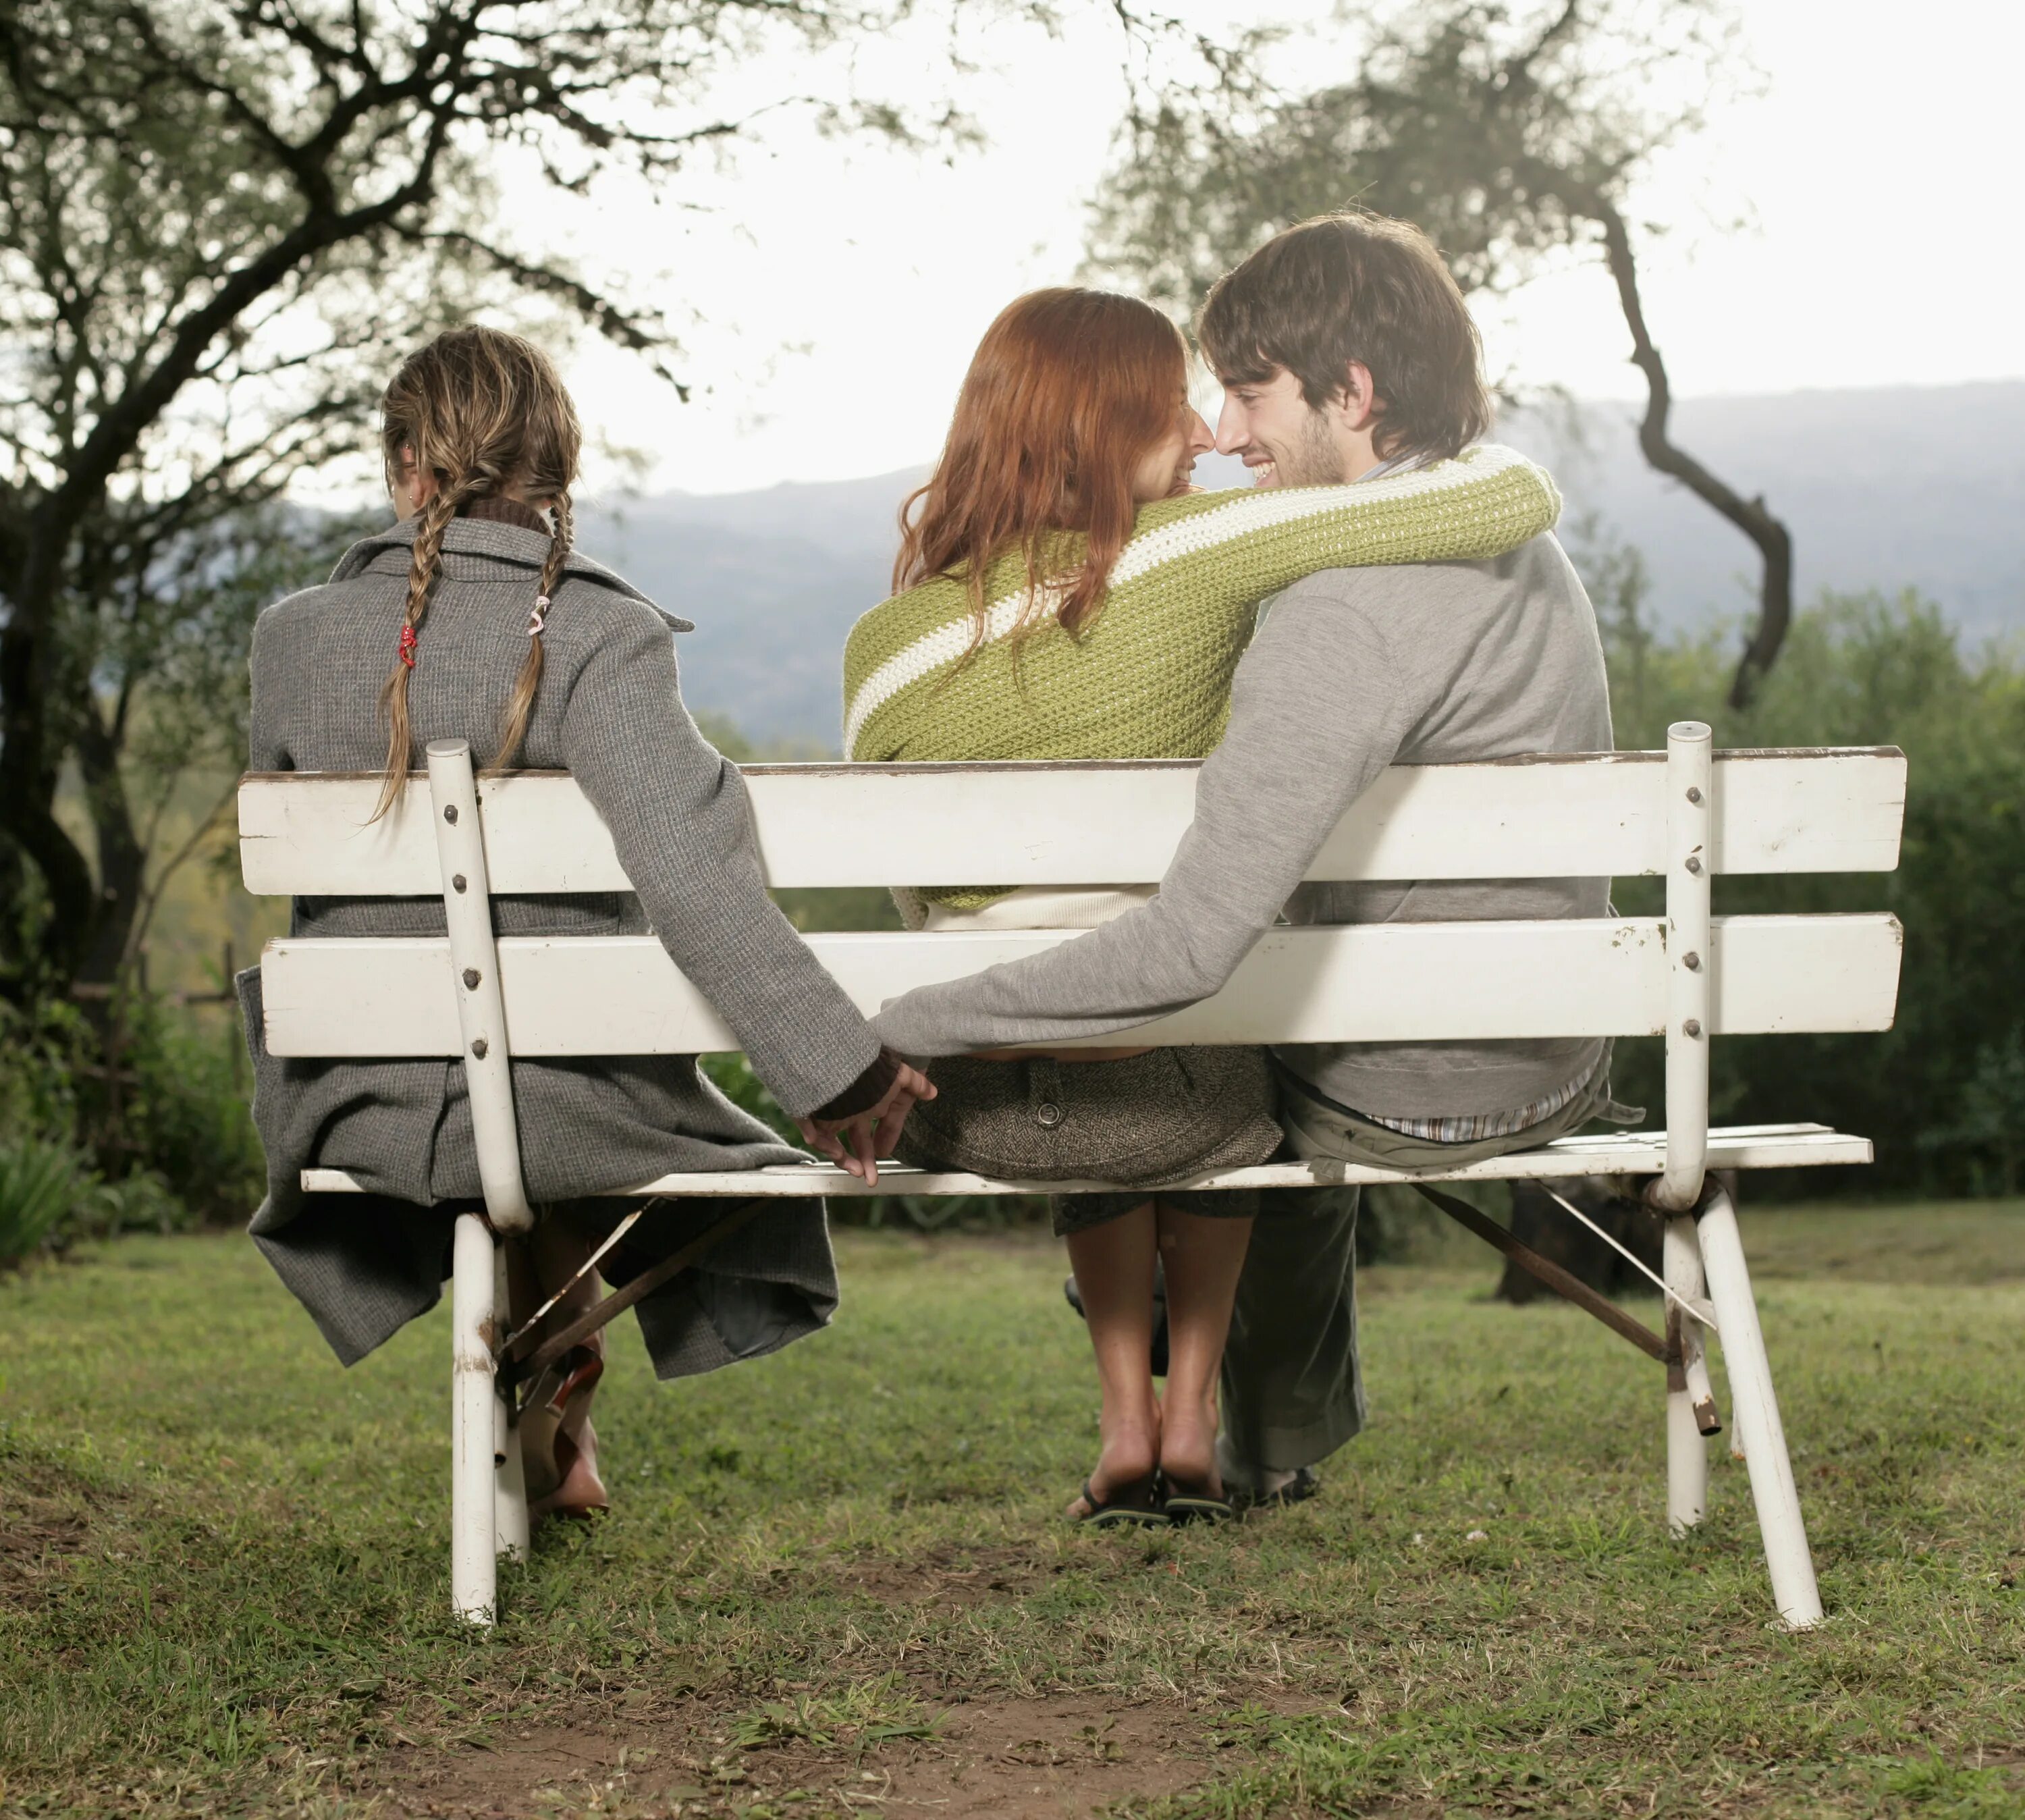 Измена на дне рождения. Любовный треугольник. Мужчина и женщина на скамейке. Третий в отношениях. Трое на лавочке.